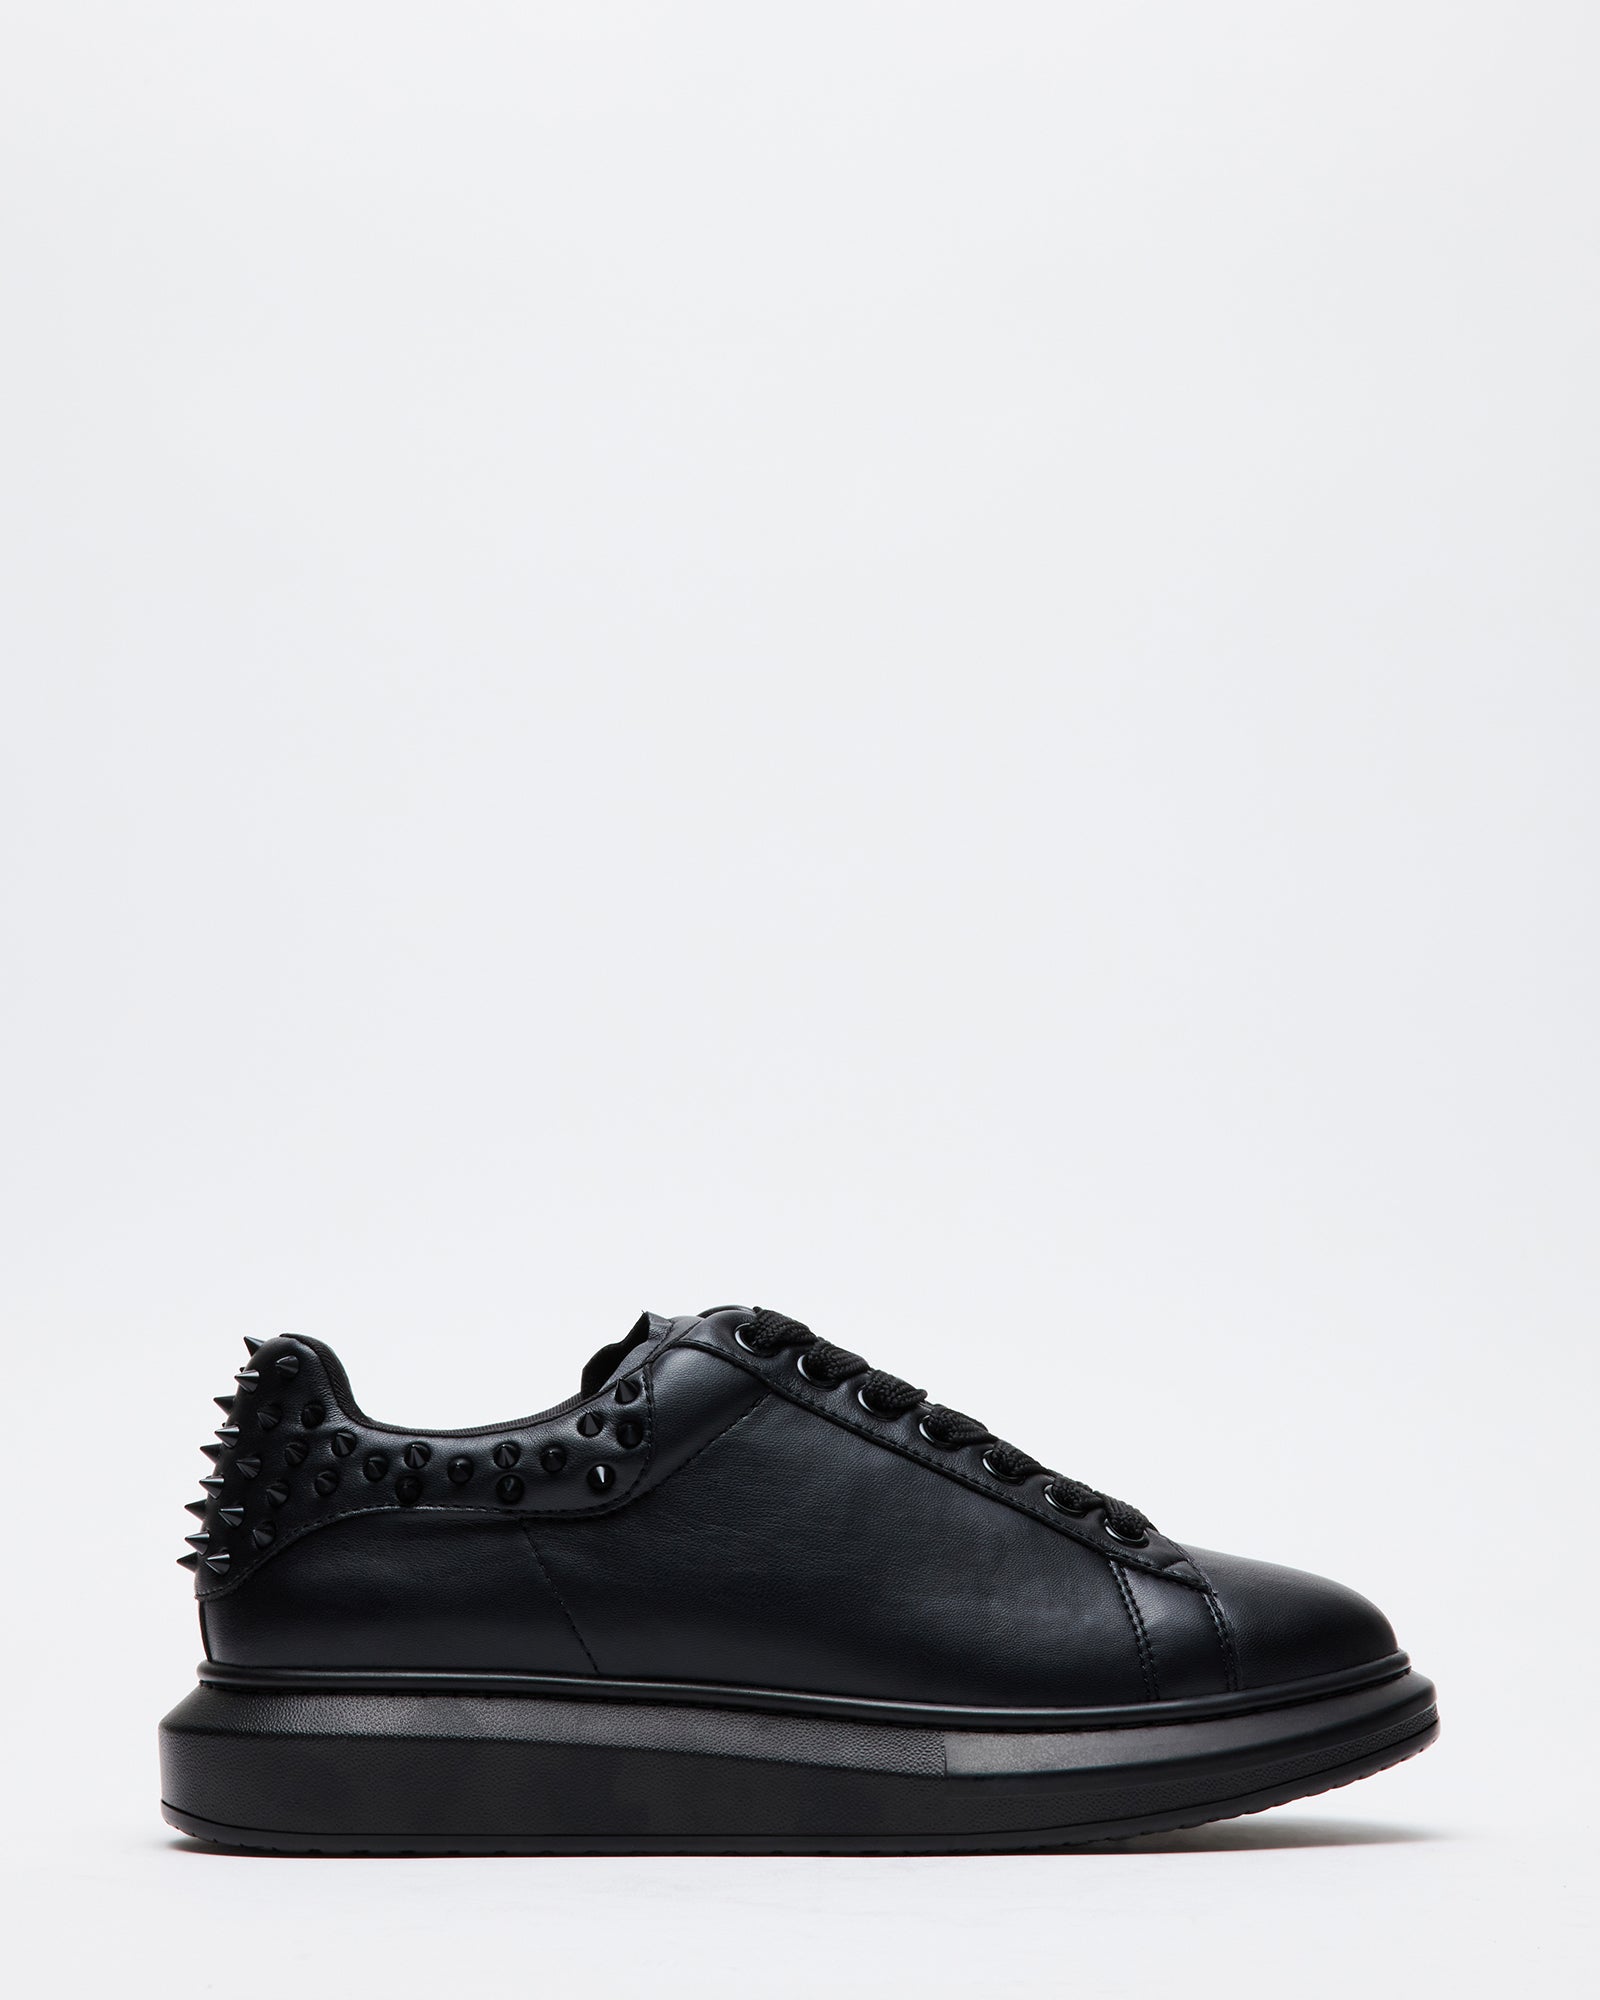 STEVE MADDEN Men's P-COOPR Casual Court Sneaker Shoes ~ White | eBay